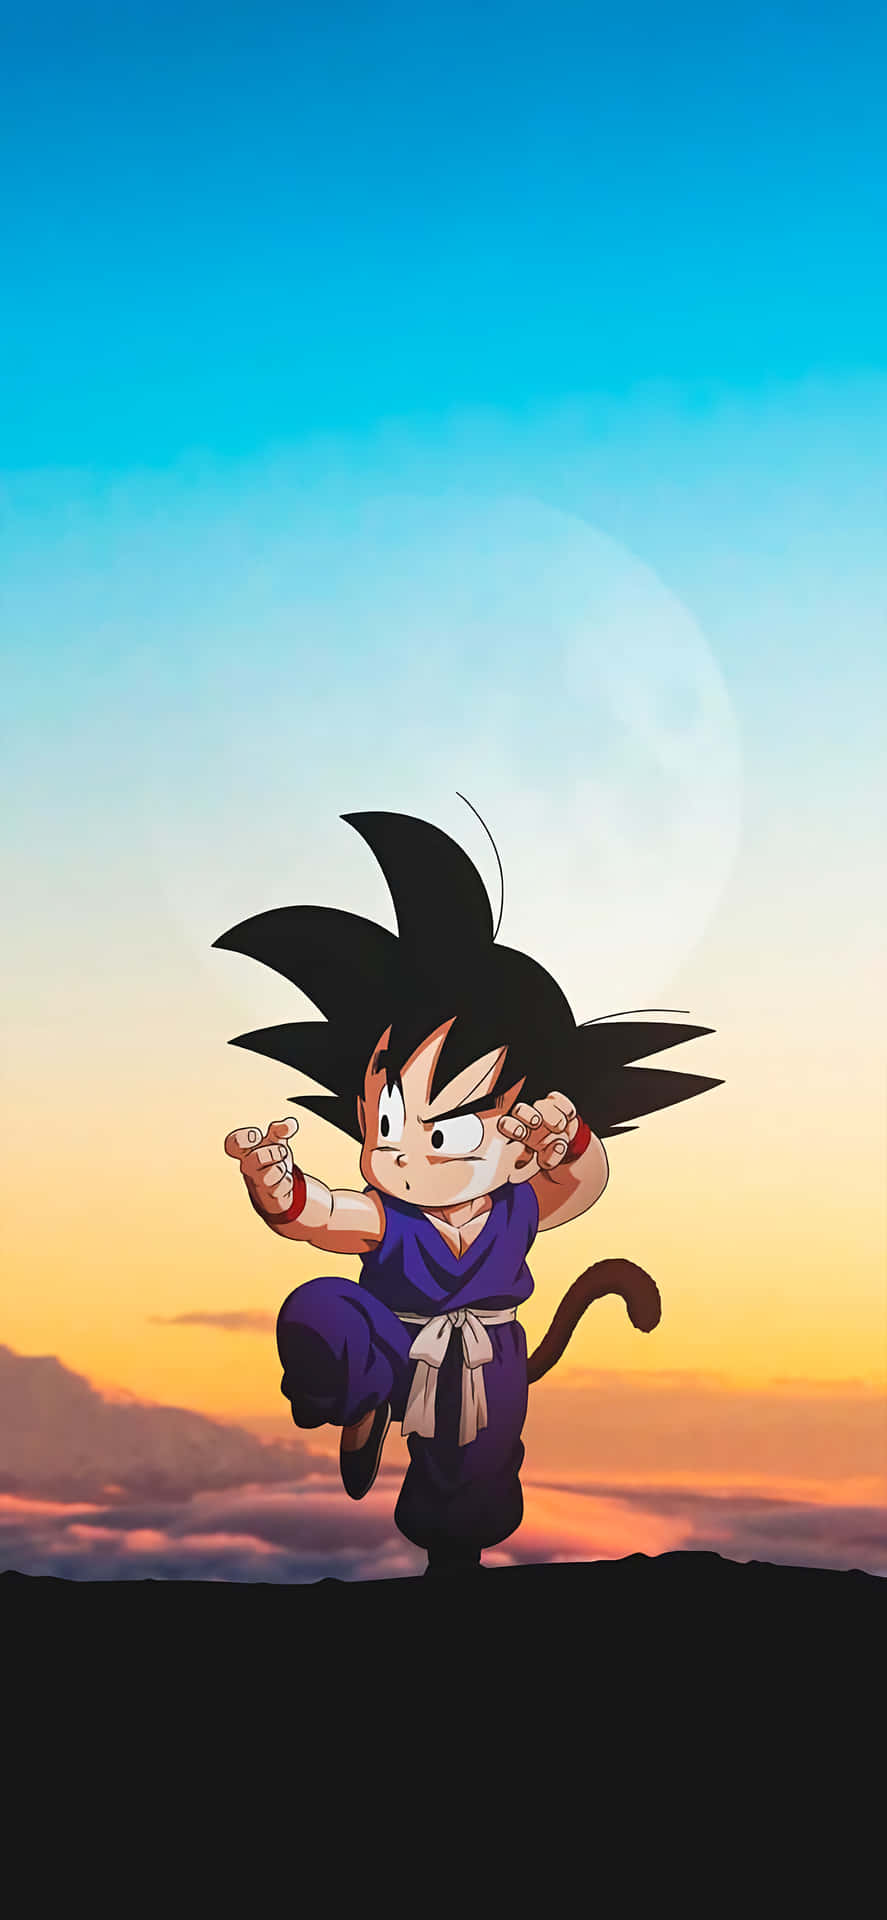 Kid Goku, den modige og magtfulde barnshelt, svæver højt over skyerne på sin Nimbus sky. Wallpaper